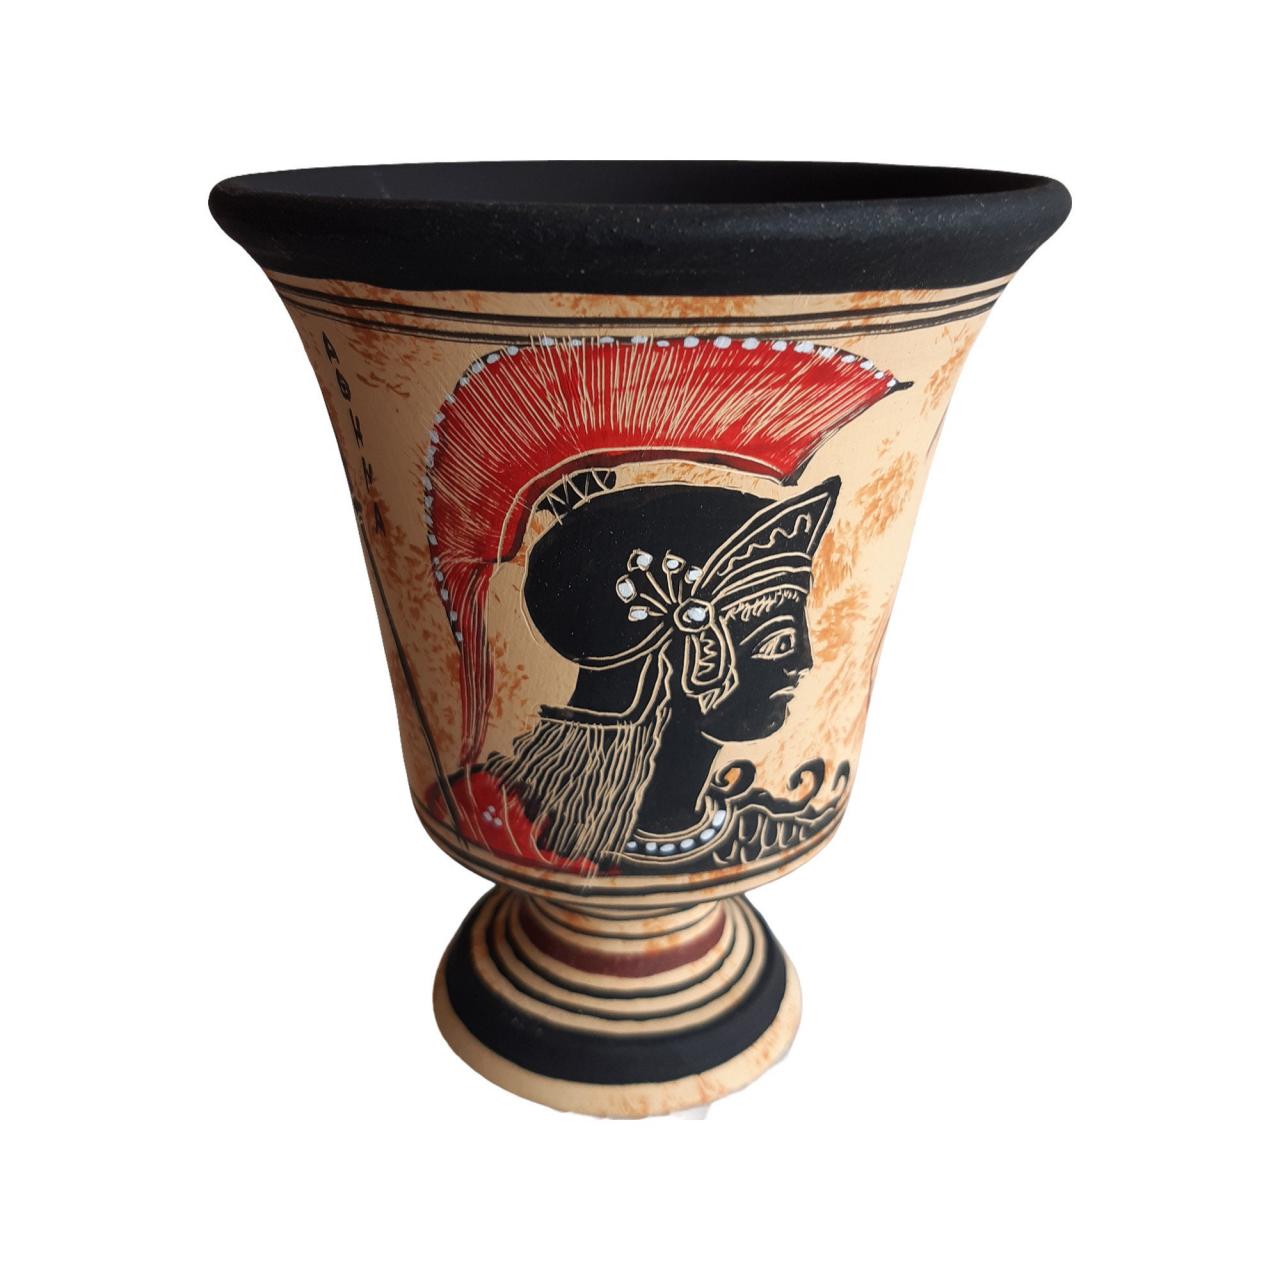 Pythagoras Cup Ceramic Terracotta - Ares God